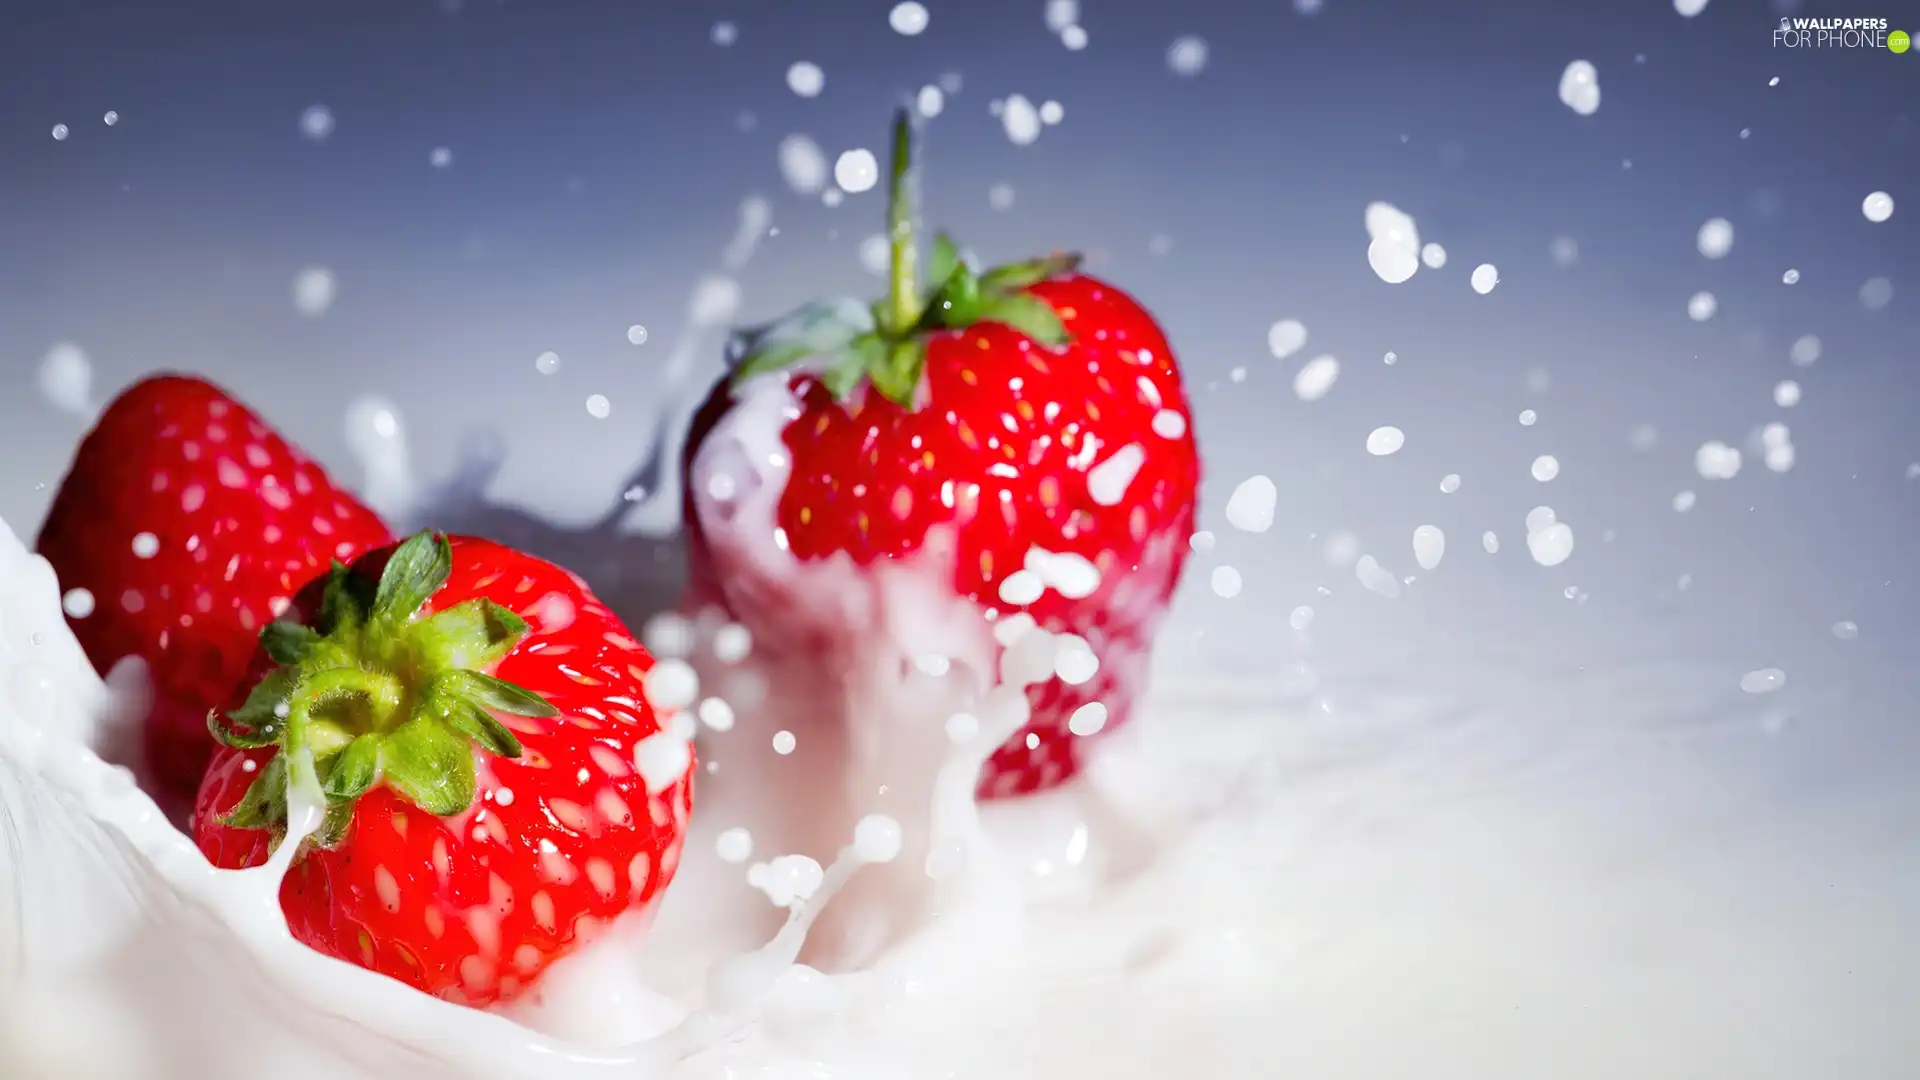 strawberries, cream